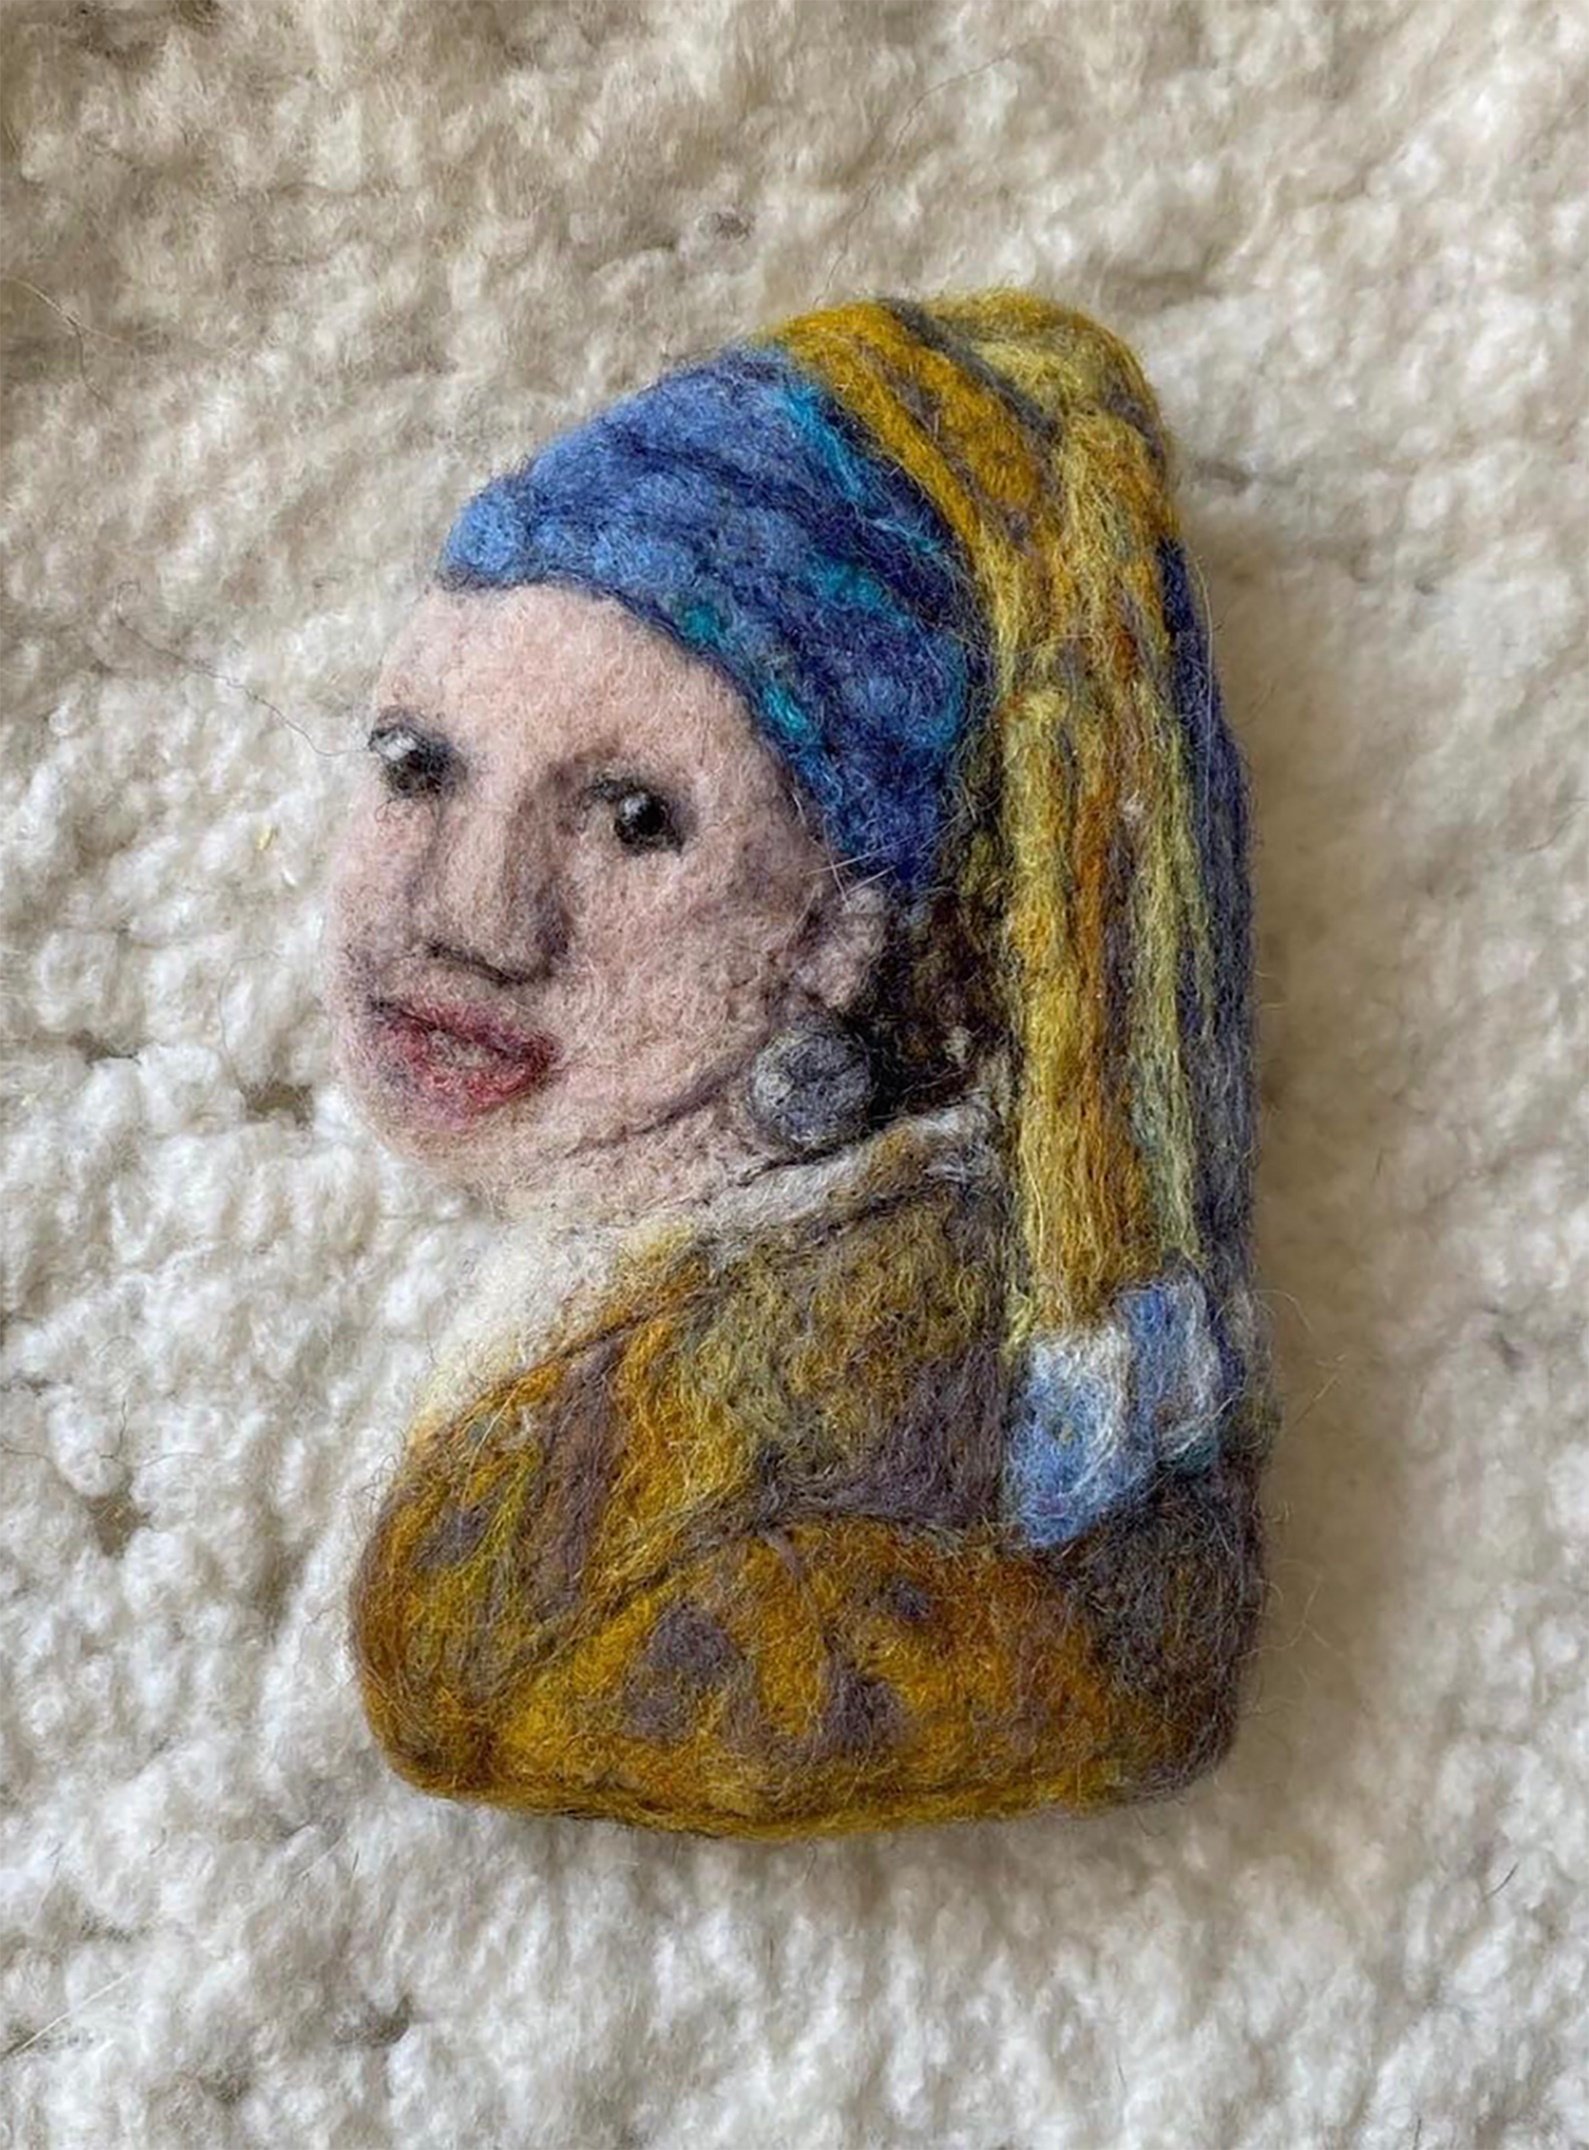 Vermeer Girl with  Pearl Earring 400％